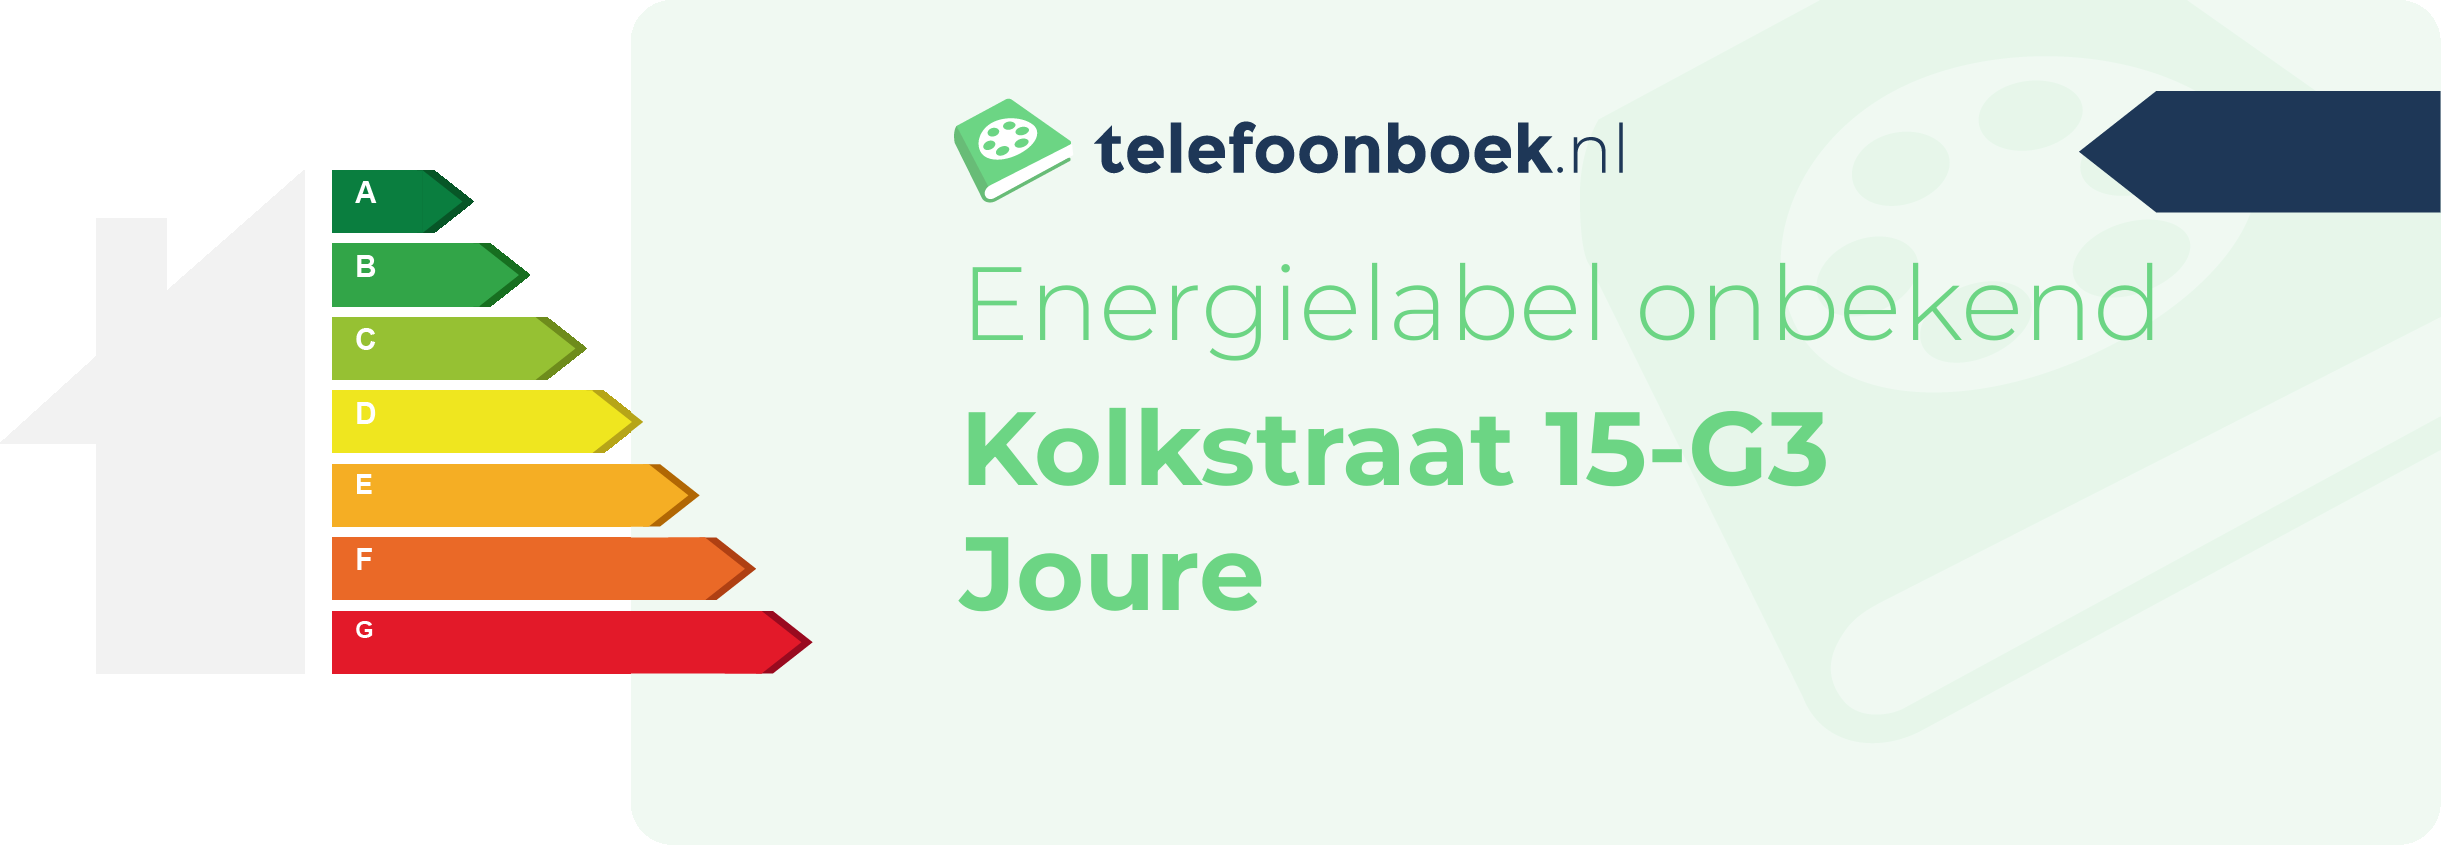 Energielabel Kolkstraat 15-G3 Joure